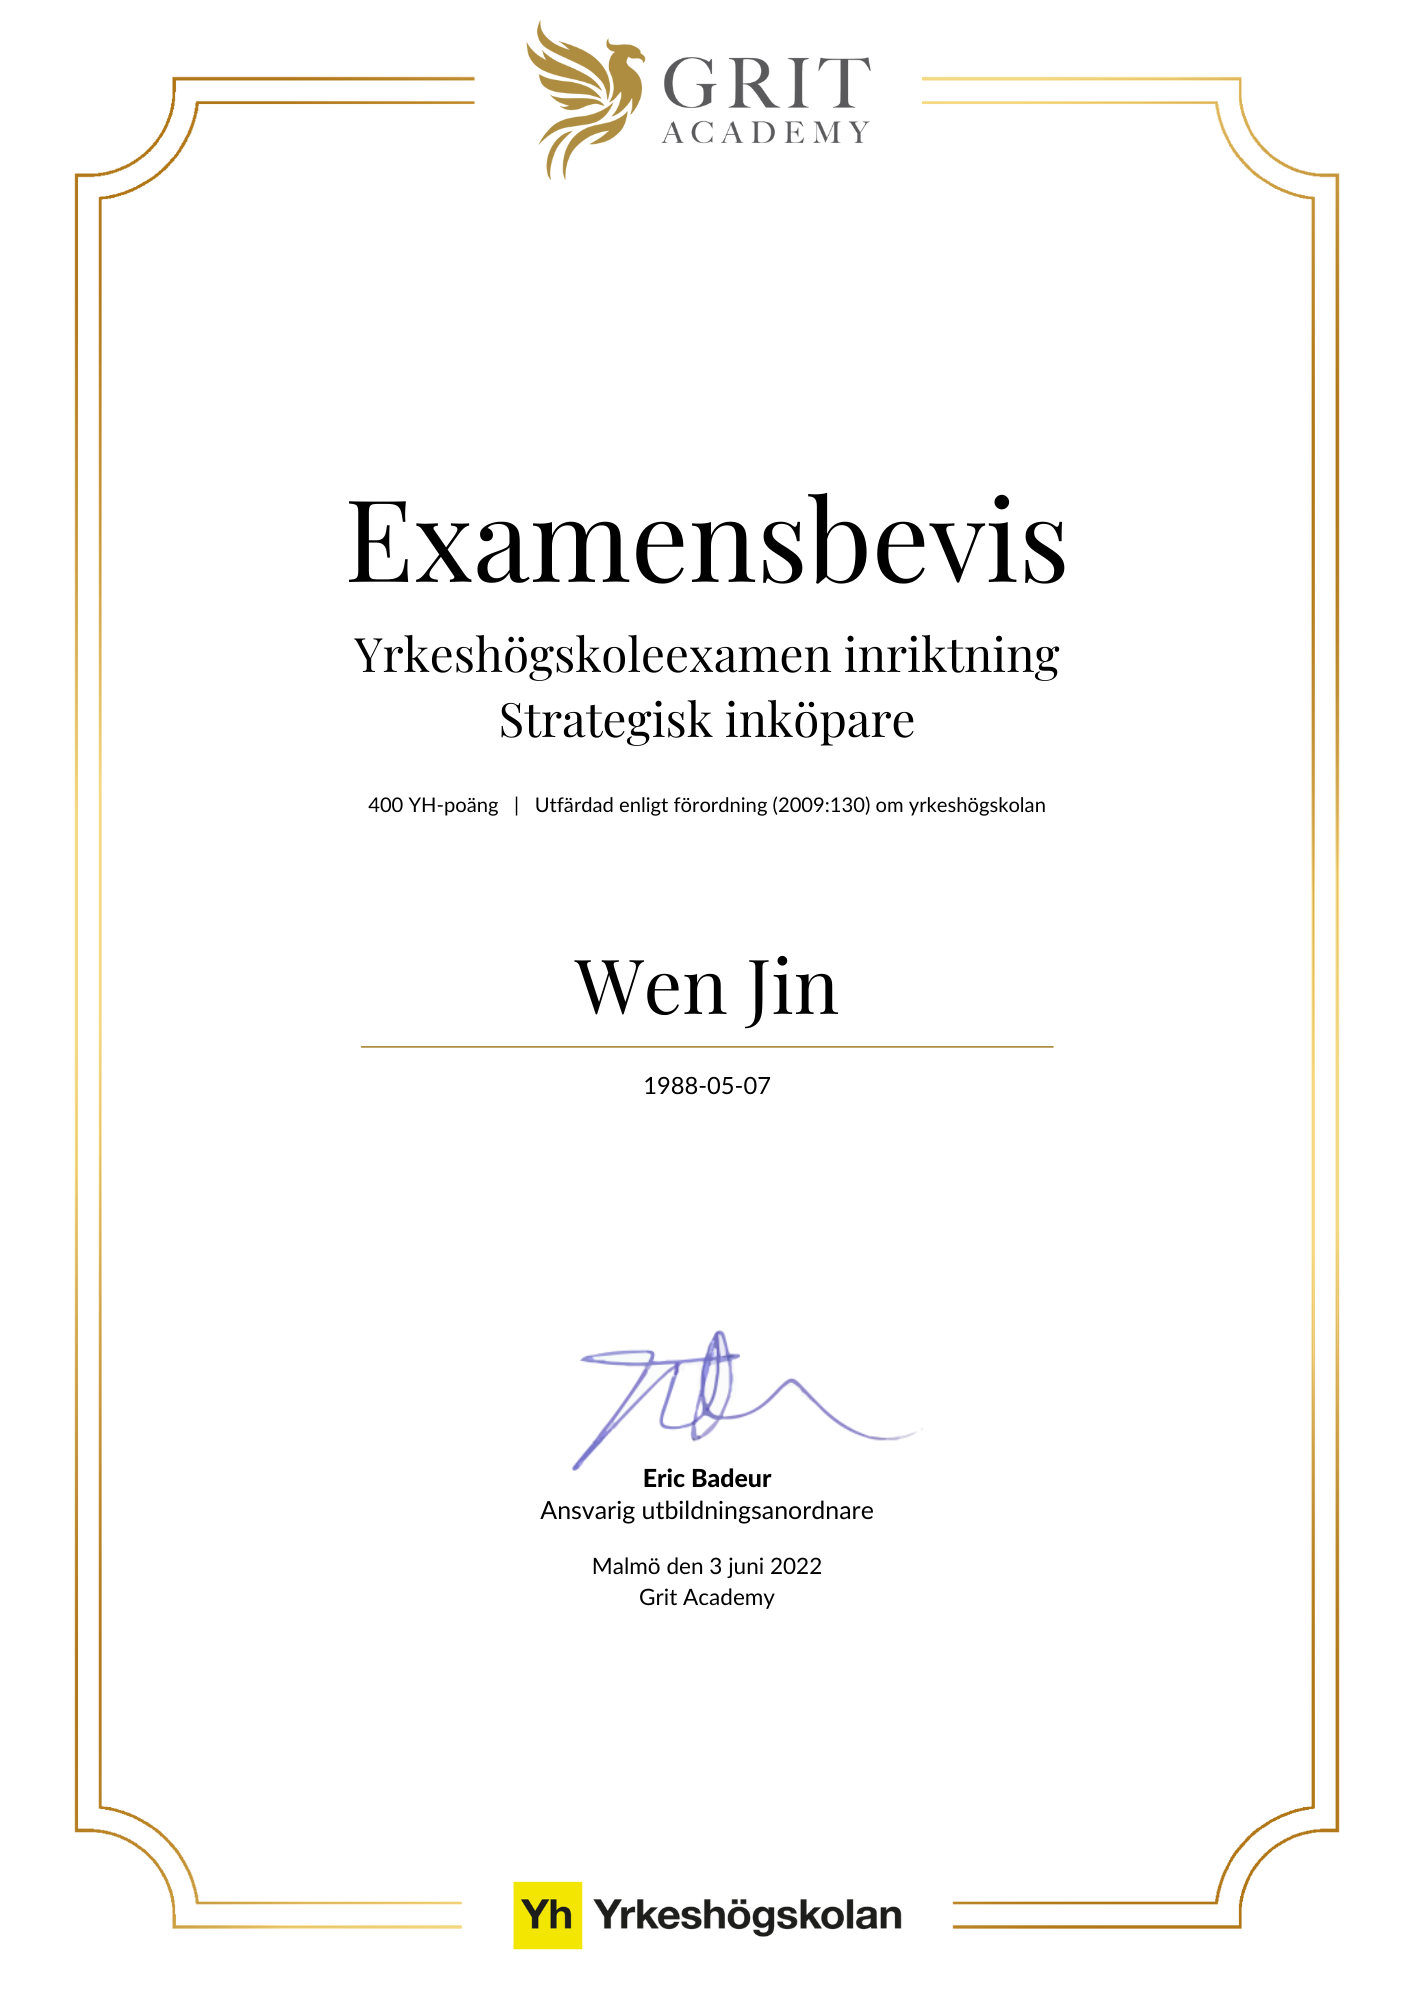 Examensbevis Wen Jin - 1